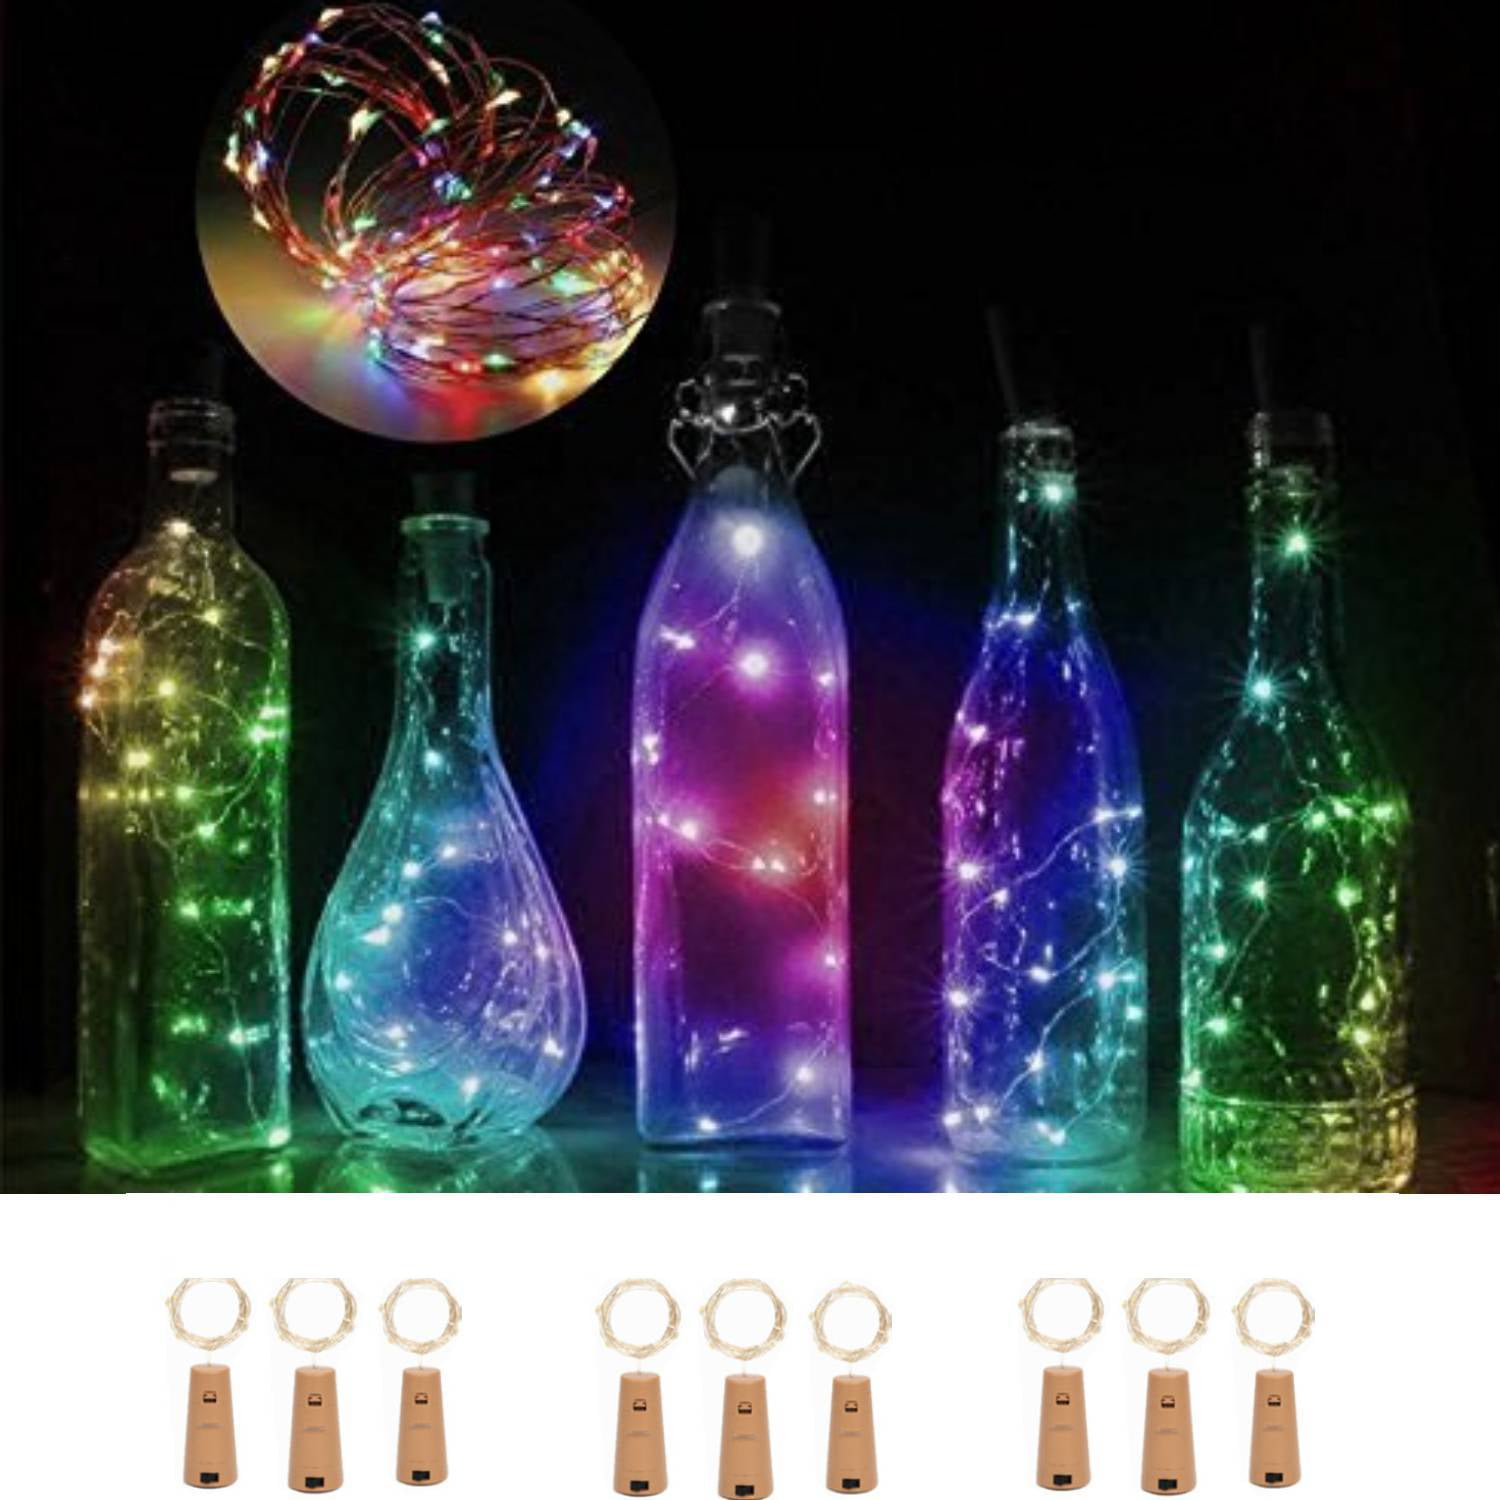 20Led Wine Bottle Cork Shaped String Lights Night Fairy Light White 20m 8 Colors 